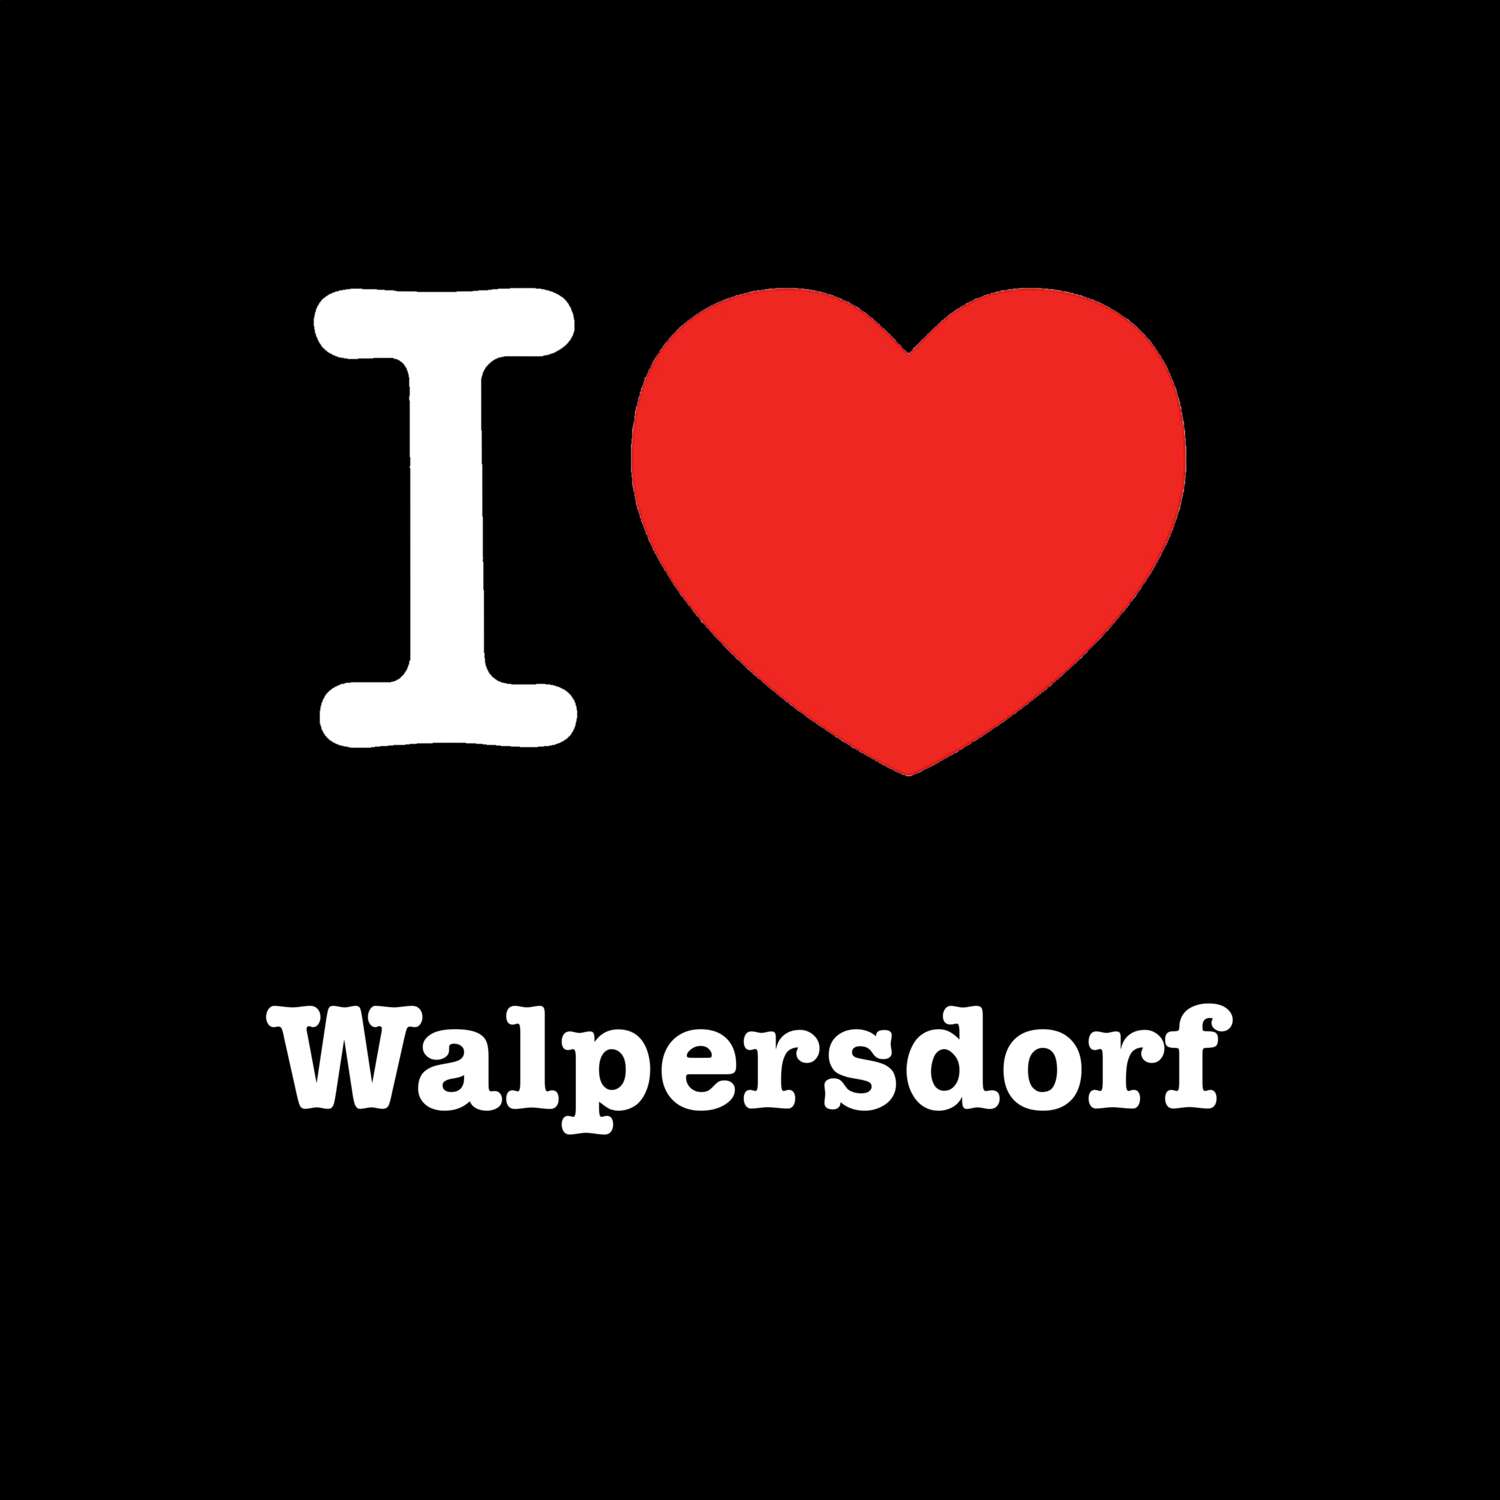 Walpersdorf T-Shirt »I love«